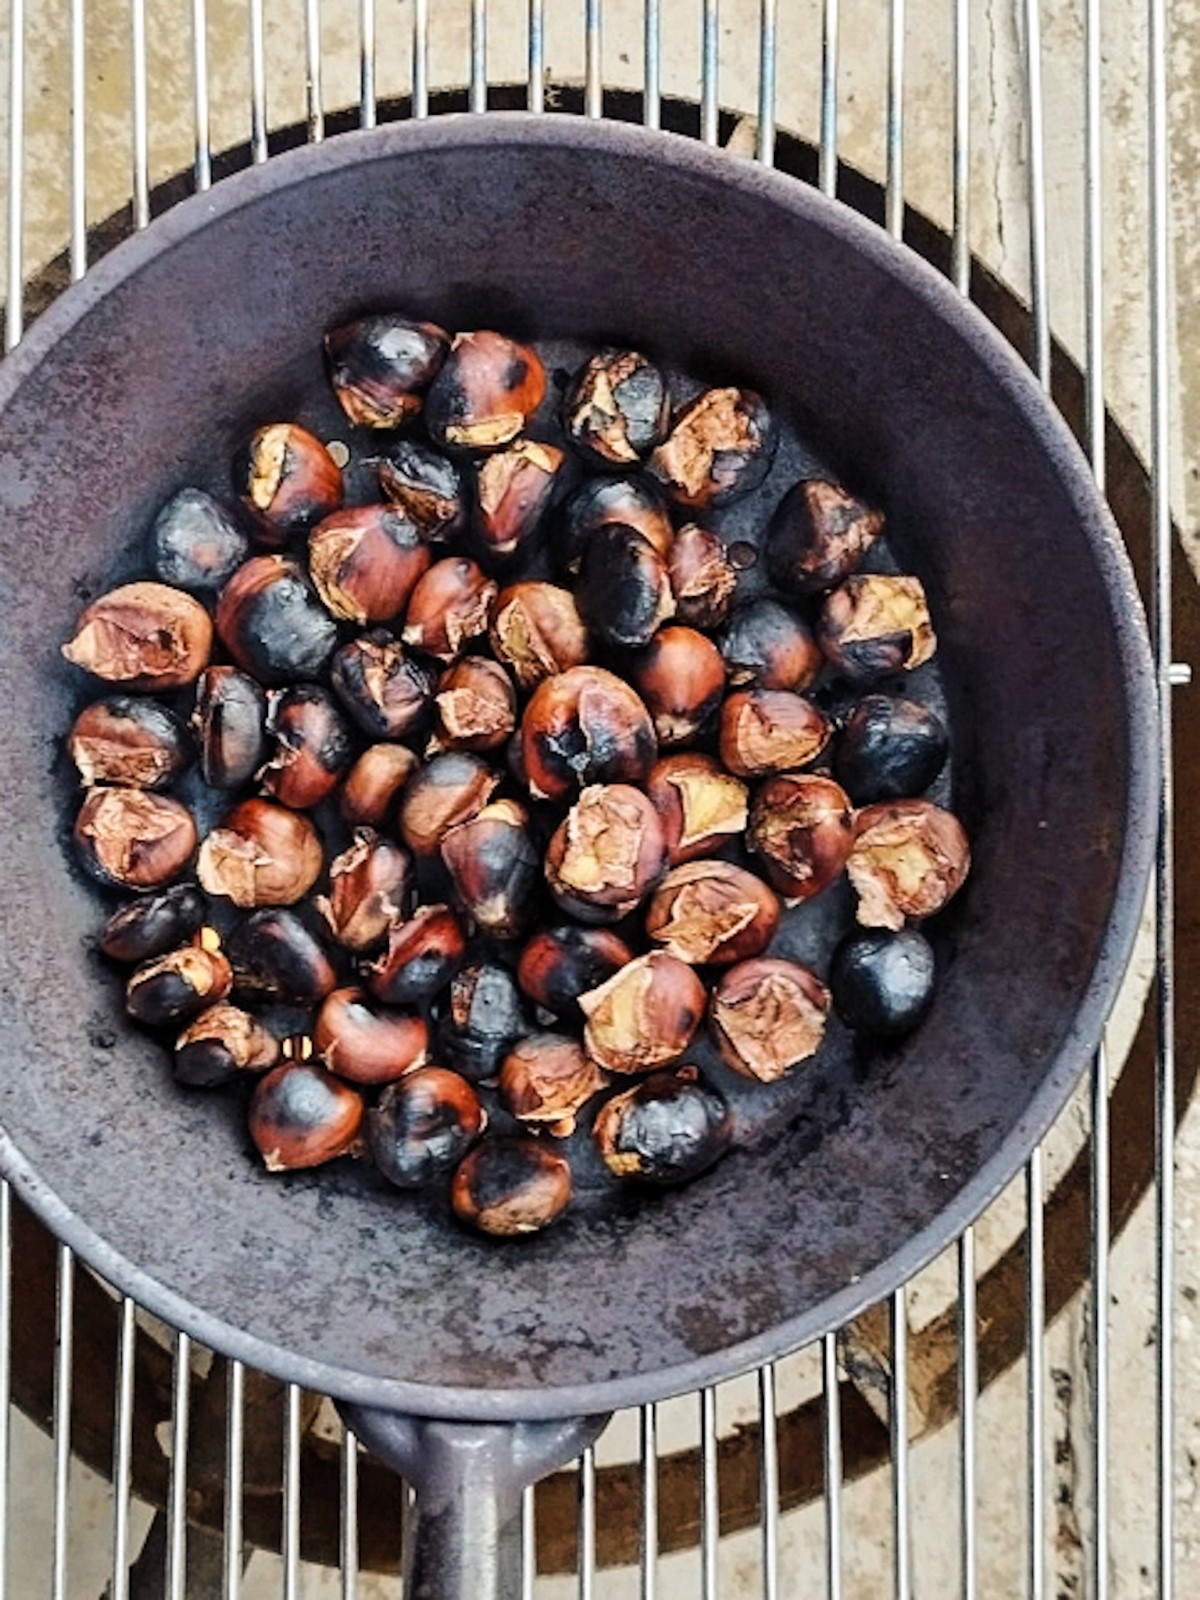 Slastni pečeni kostanji - Roasted Chesnuts